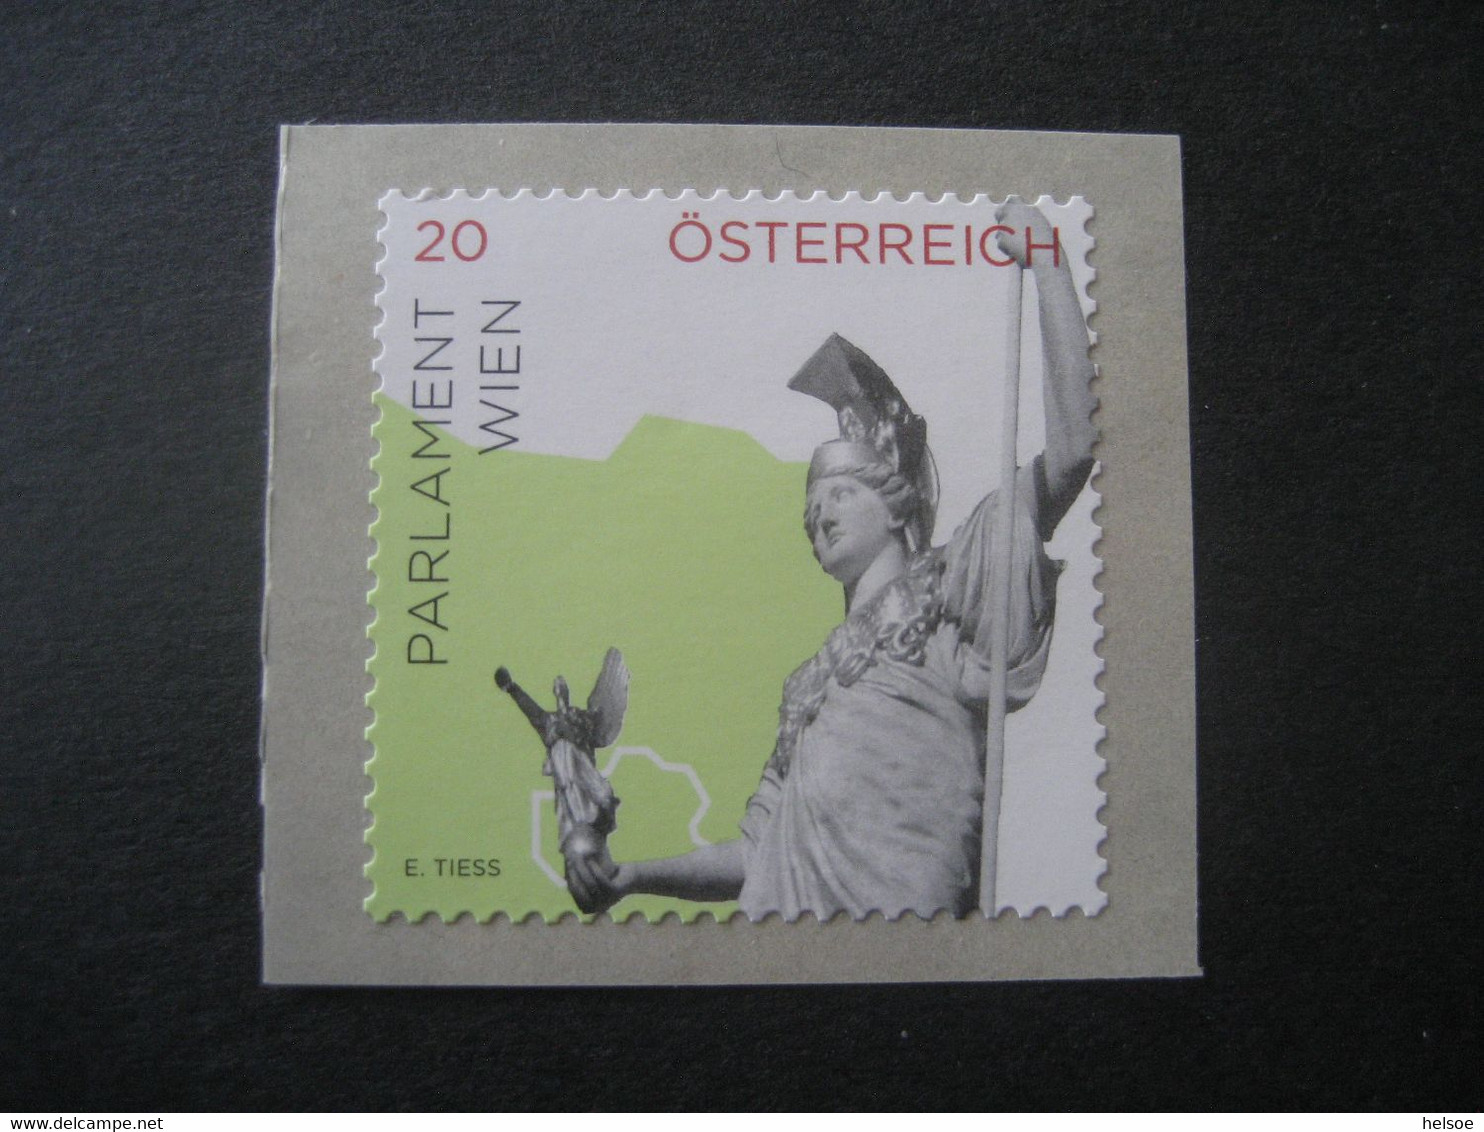 Österreich 2015- Freimarke Impressionen Aus Österreich, Parlament Wien, Nennwert 20 Ct. Mi. 3185 Ungebraucht - Blocks & Kleinbögen